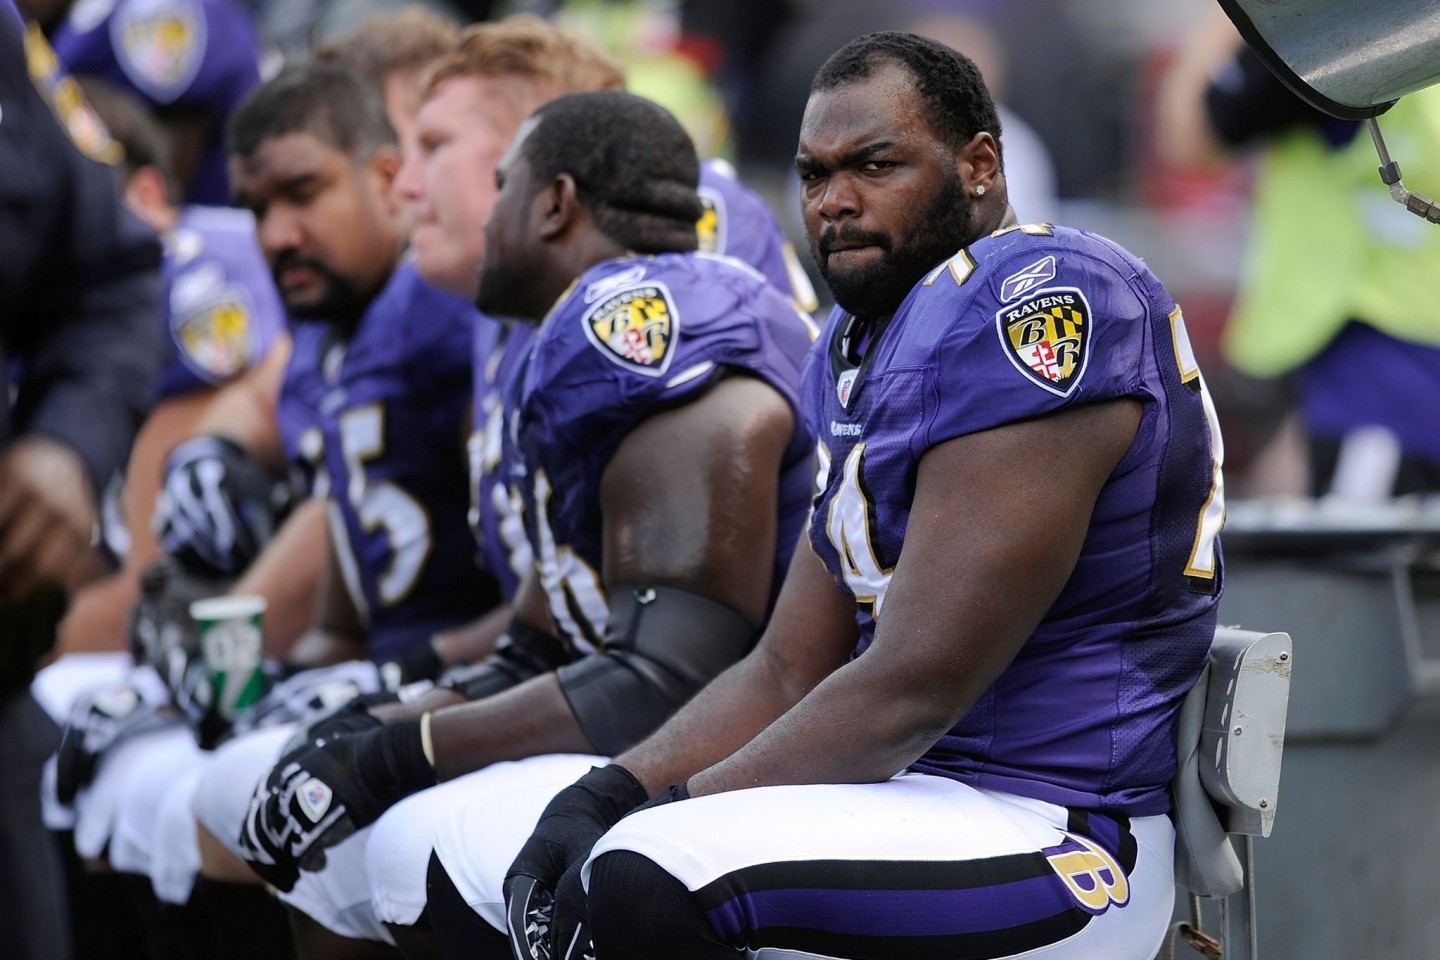 Baltimore Ravens Offensive Tackle Michael Oher sitzt während des NFL-Footballspiels gegen die Buffalo Bills in Baltimore auf der Bank.